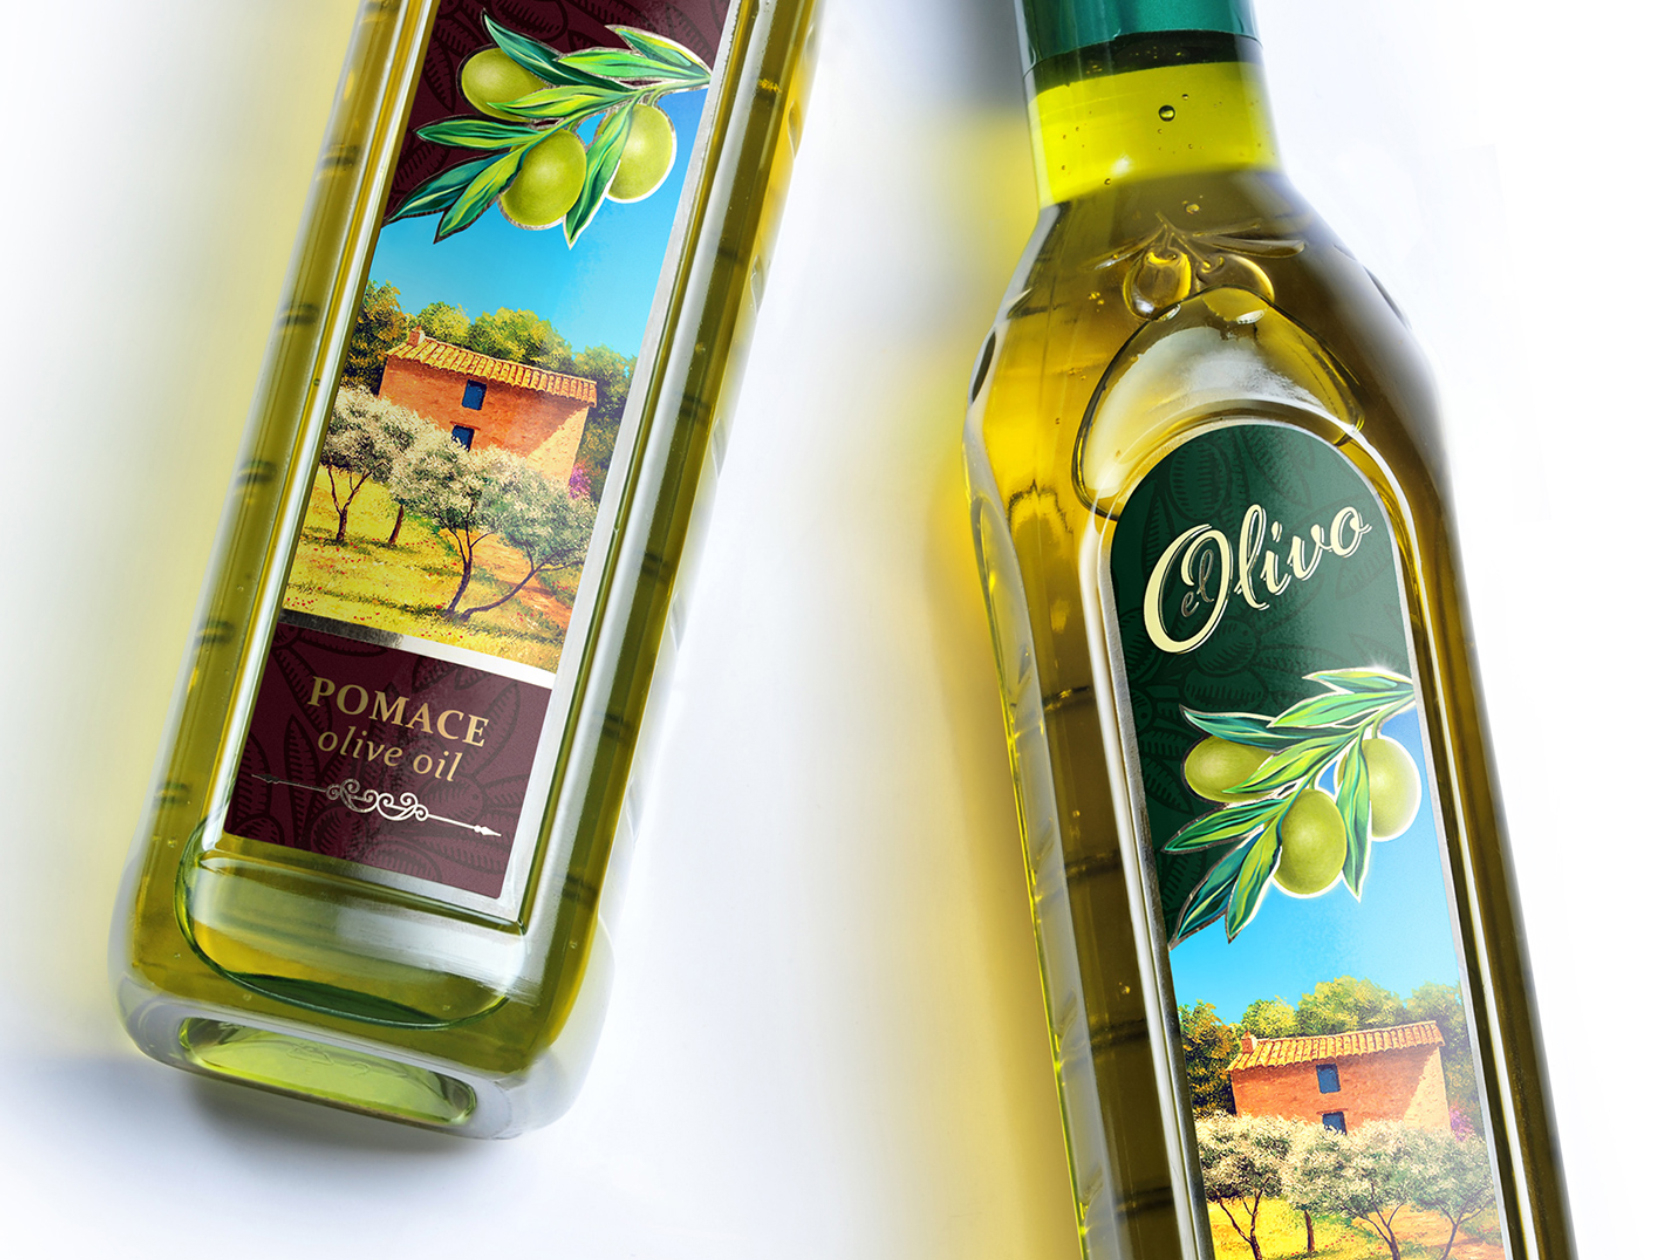 EL OLIVO - olive oil.